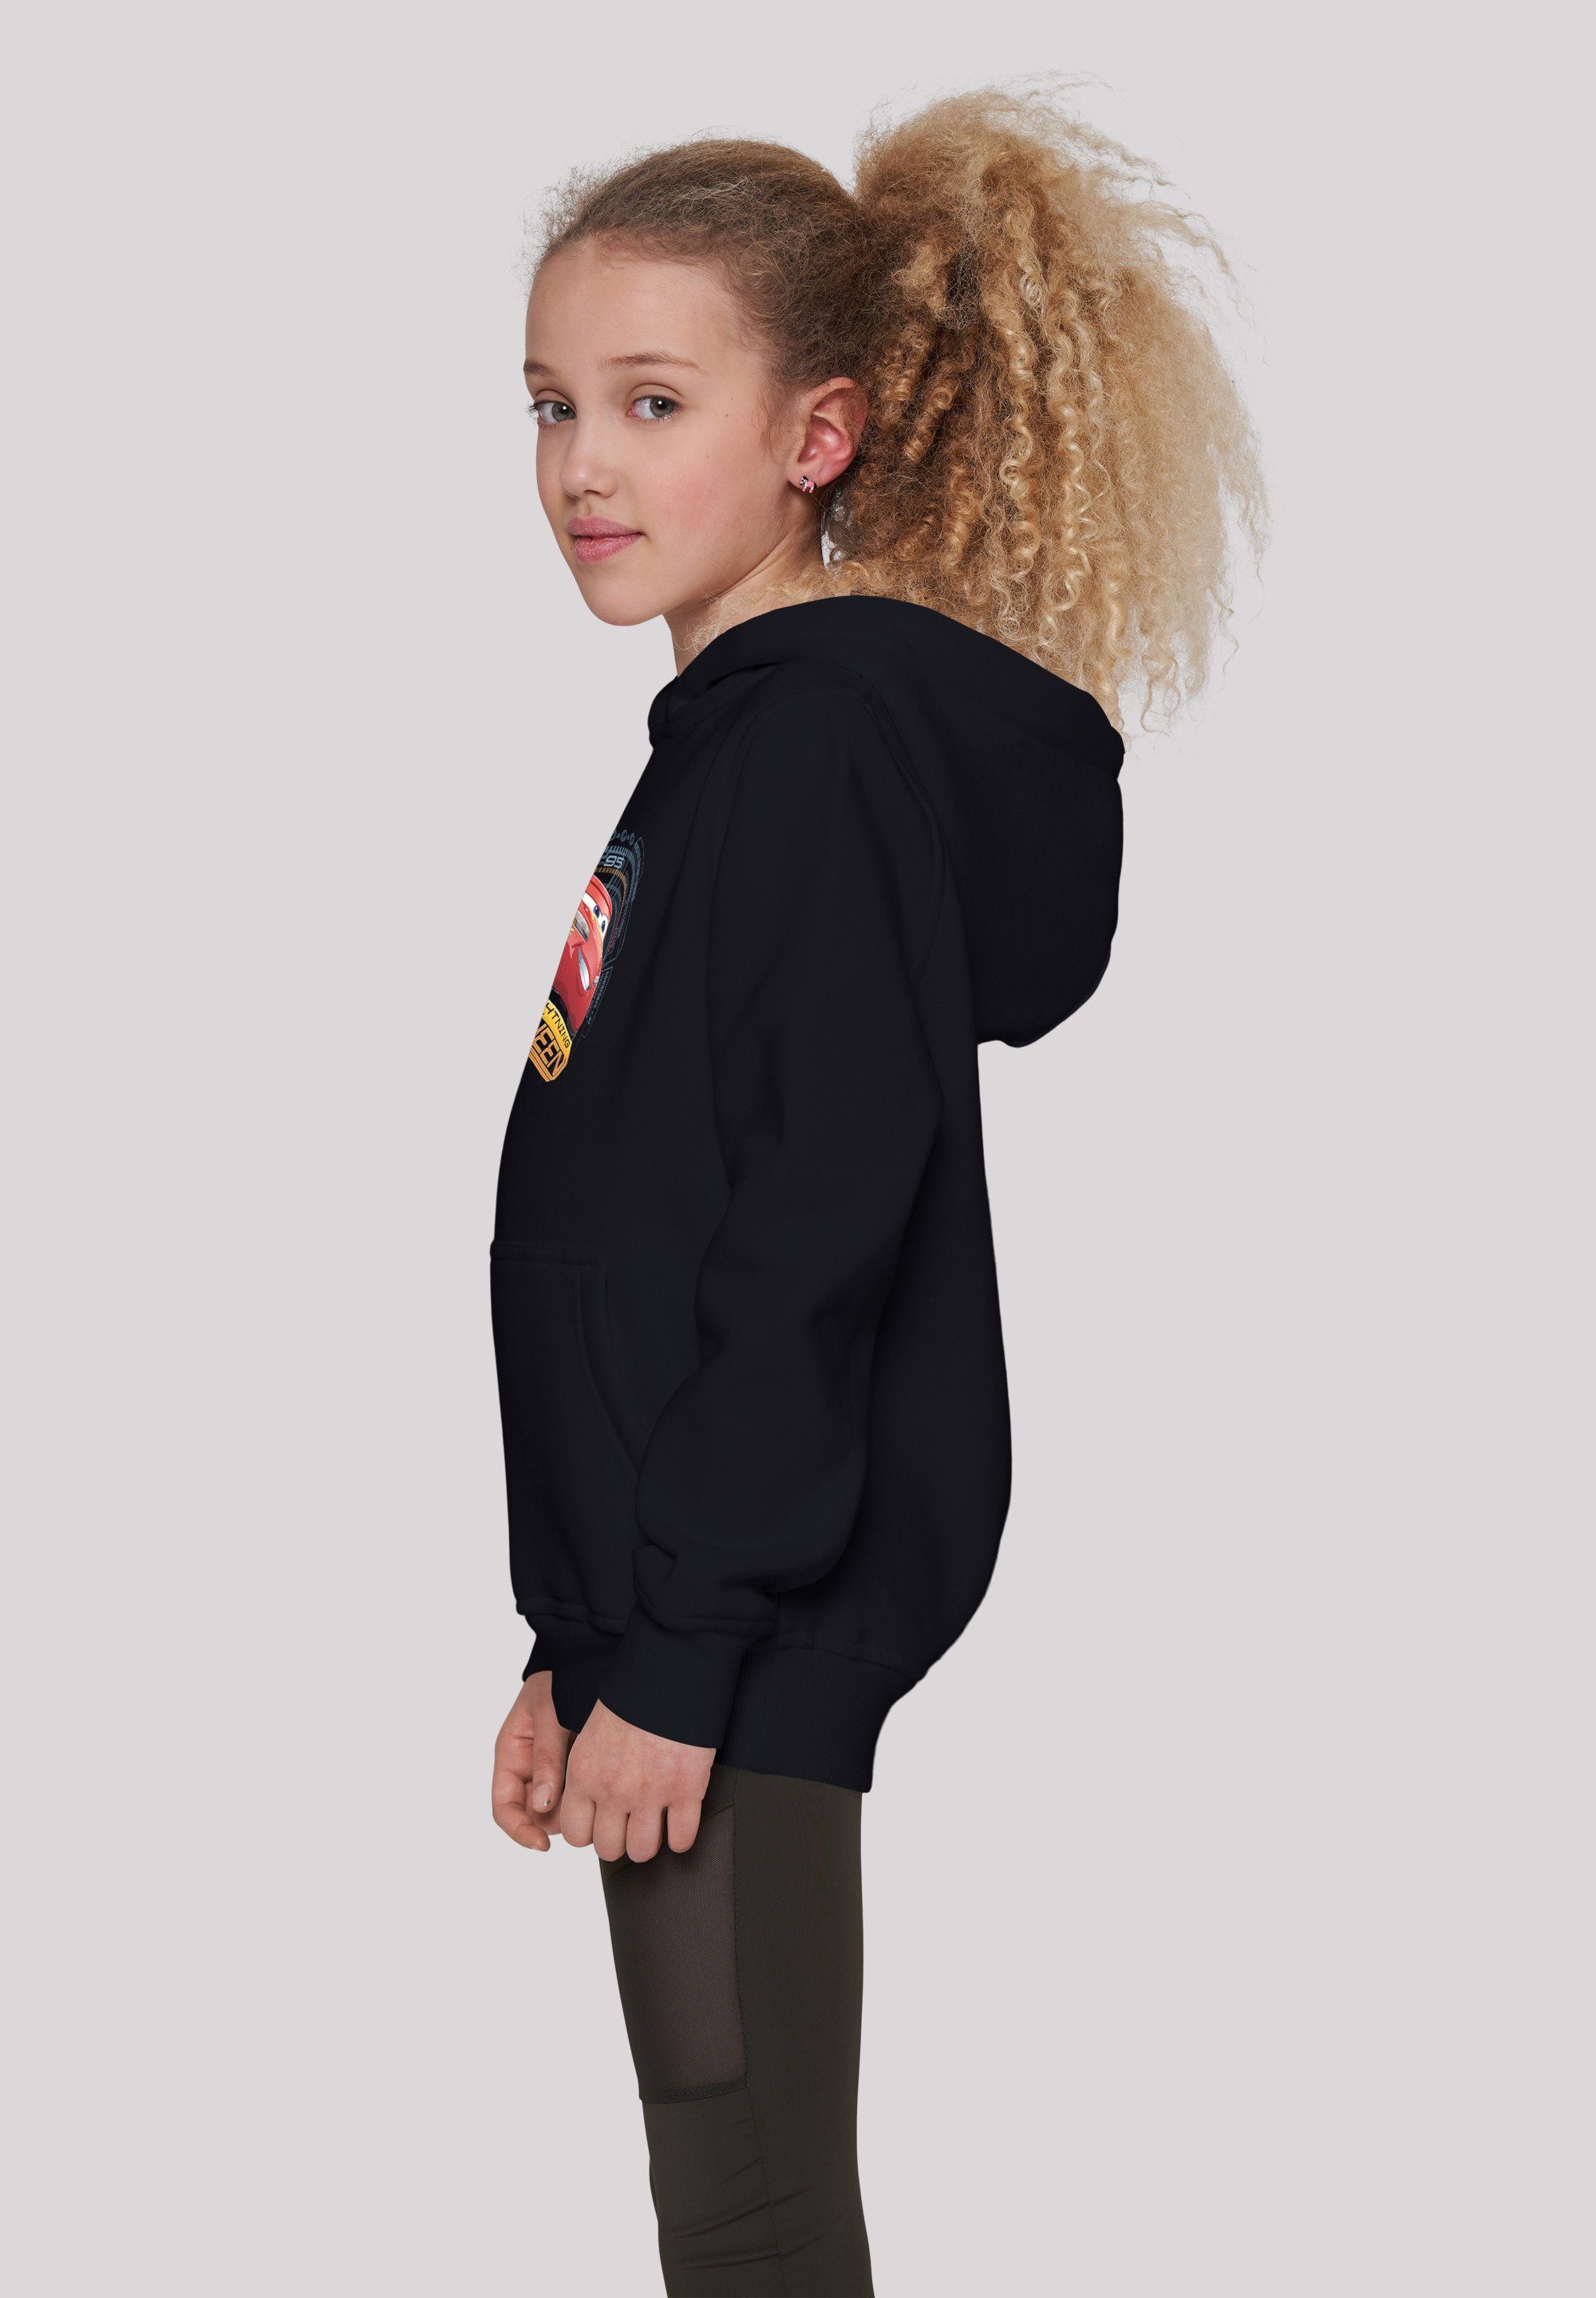 Sweatshirt Cars Kinder,Premium F4NT4STIC Lightning McQueen Disney Unisex schwarz Merch,Jungen,Mädchen,Bedruckt